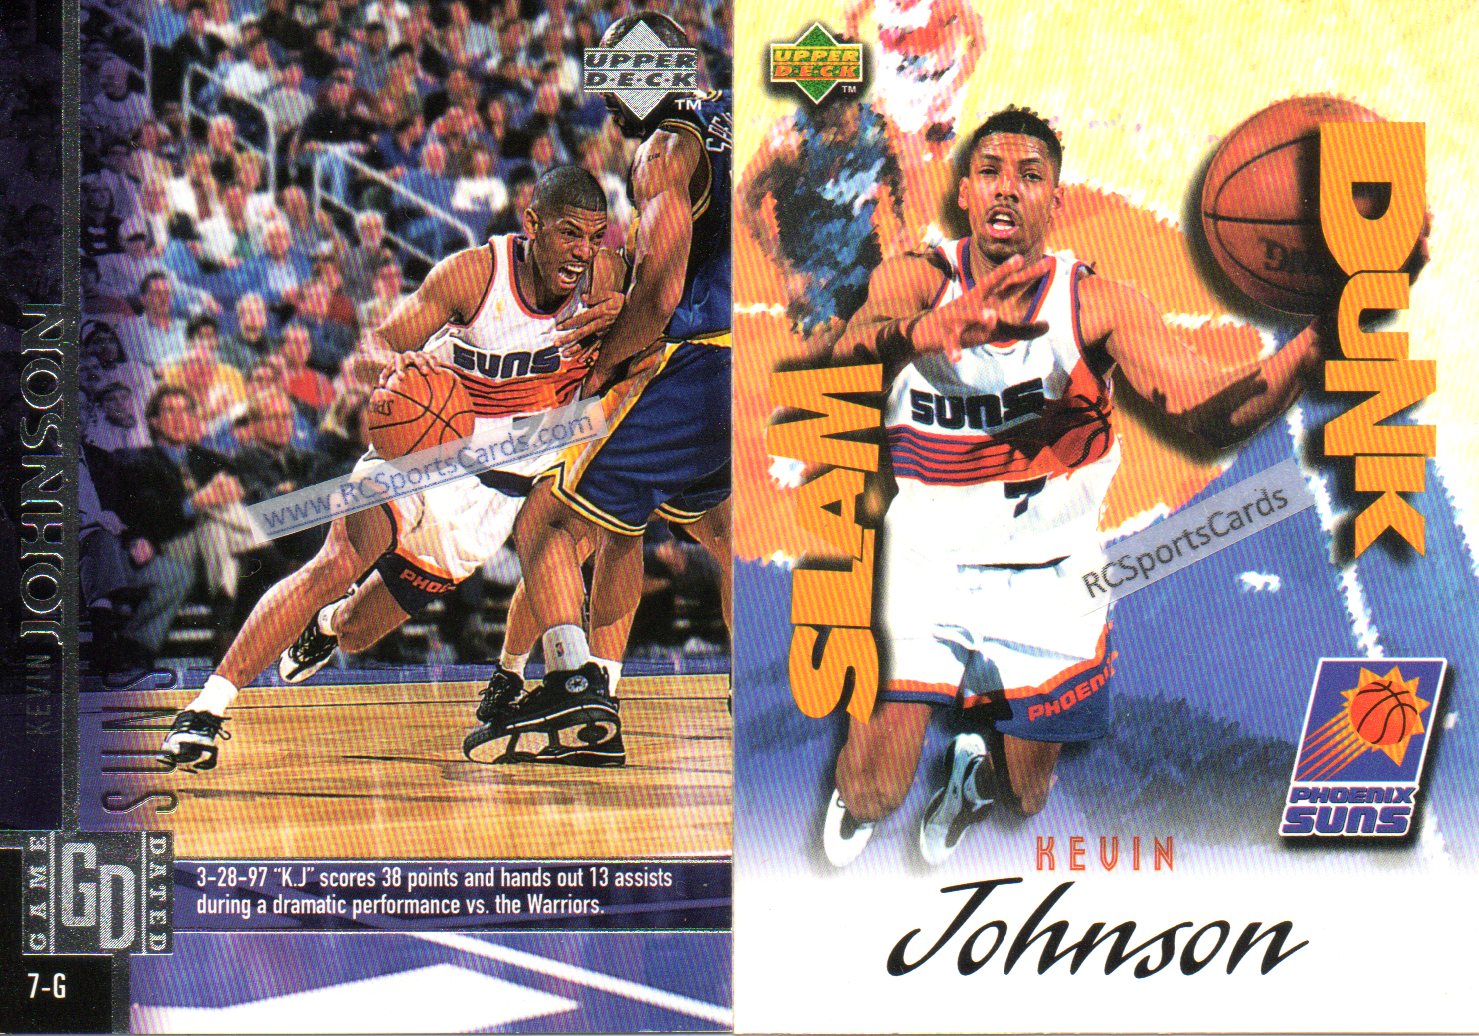 1997-98 Kevin Johnson, Suns Itm#N4735